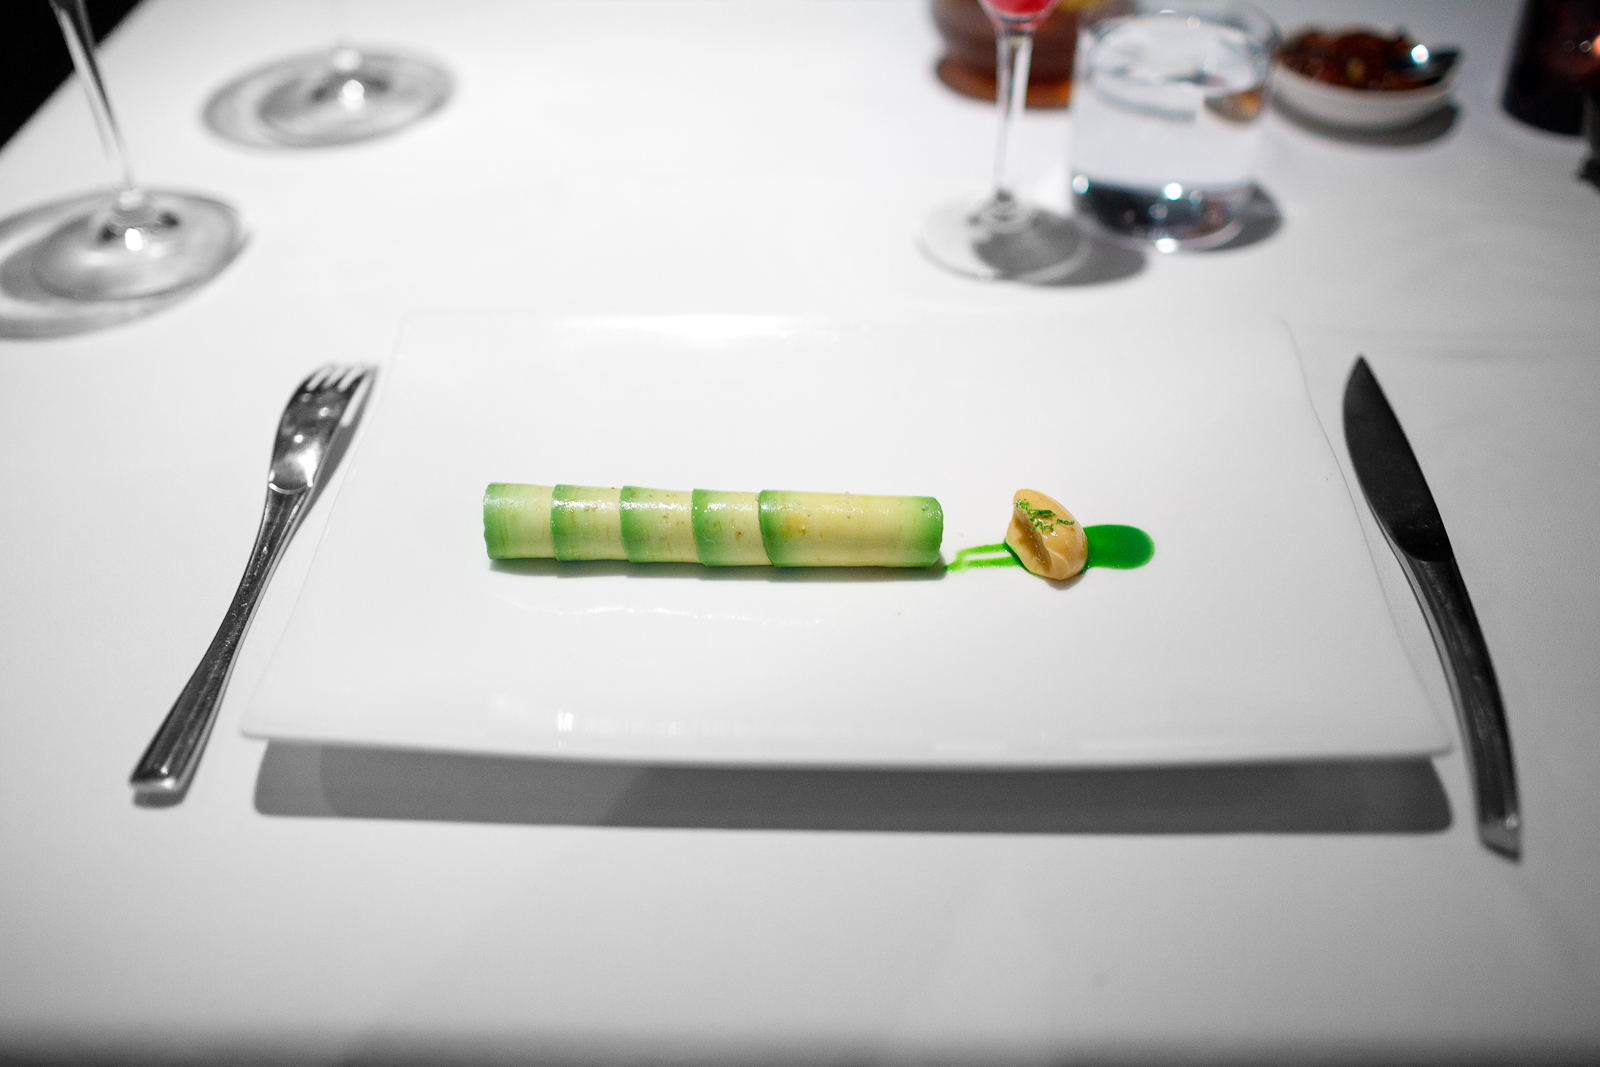 3rd Course: Flauta de aguacate rellena de vuelve a la vida - mayonesa de chipotle rallado, emulsión de cilantro